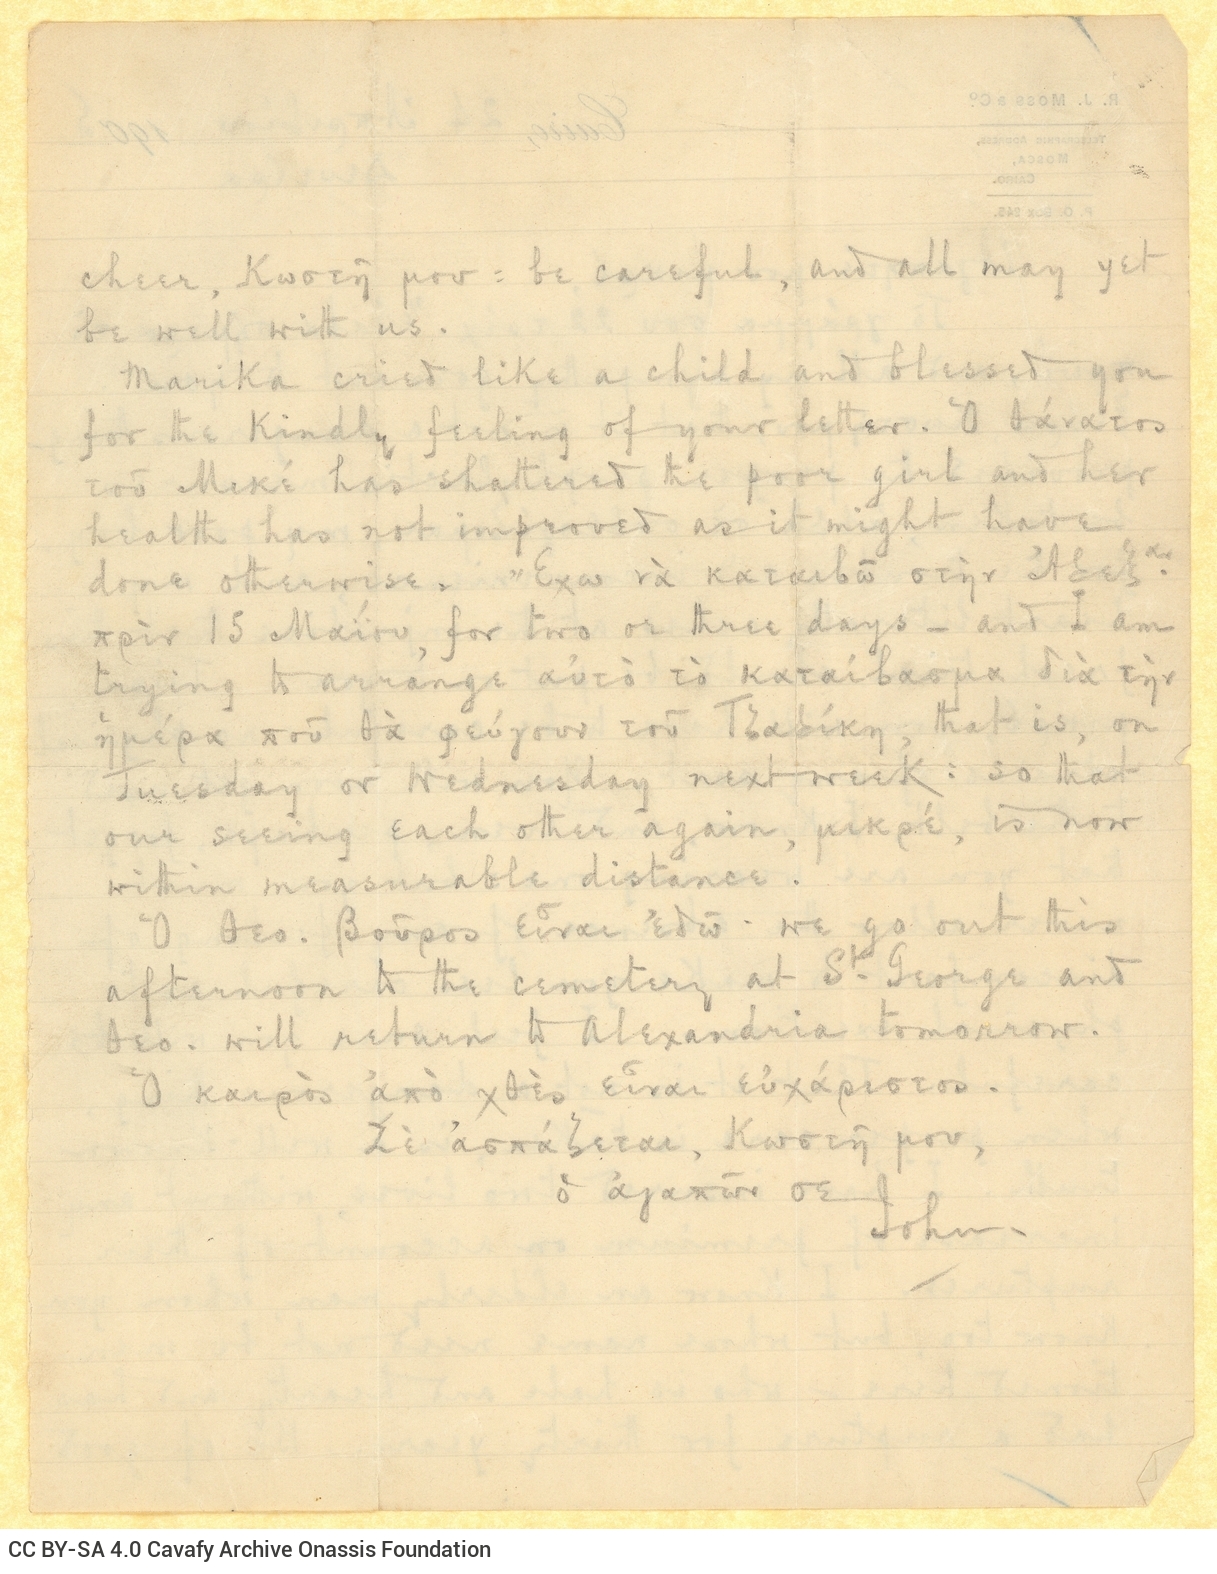 Χειρόγραφη επιστολή του Τζων Καβάφη προς τον Κ. Π. Καβάφη, από το Κάιρ